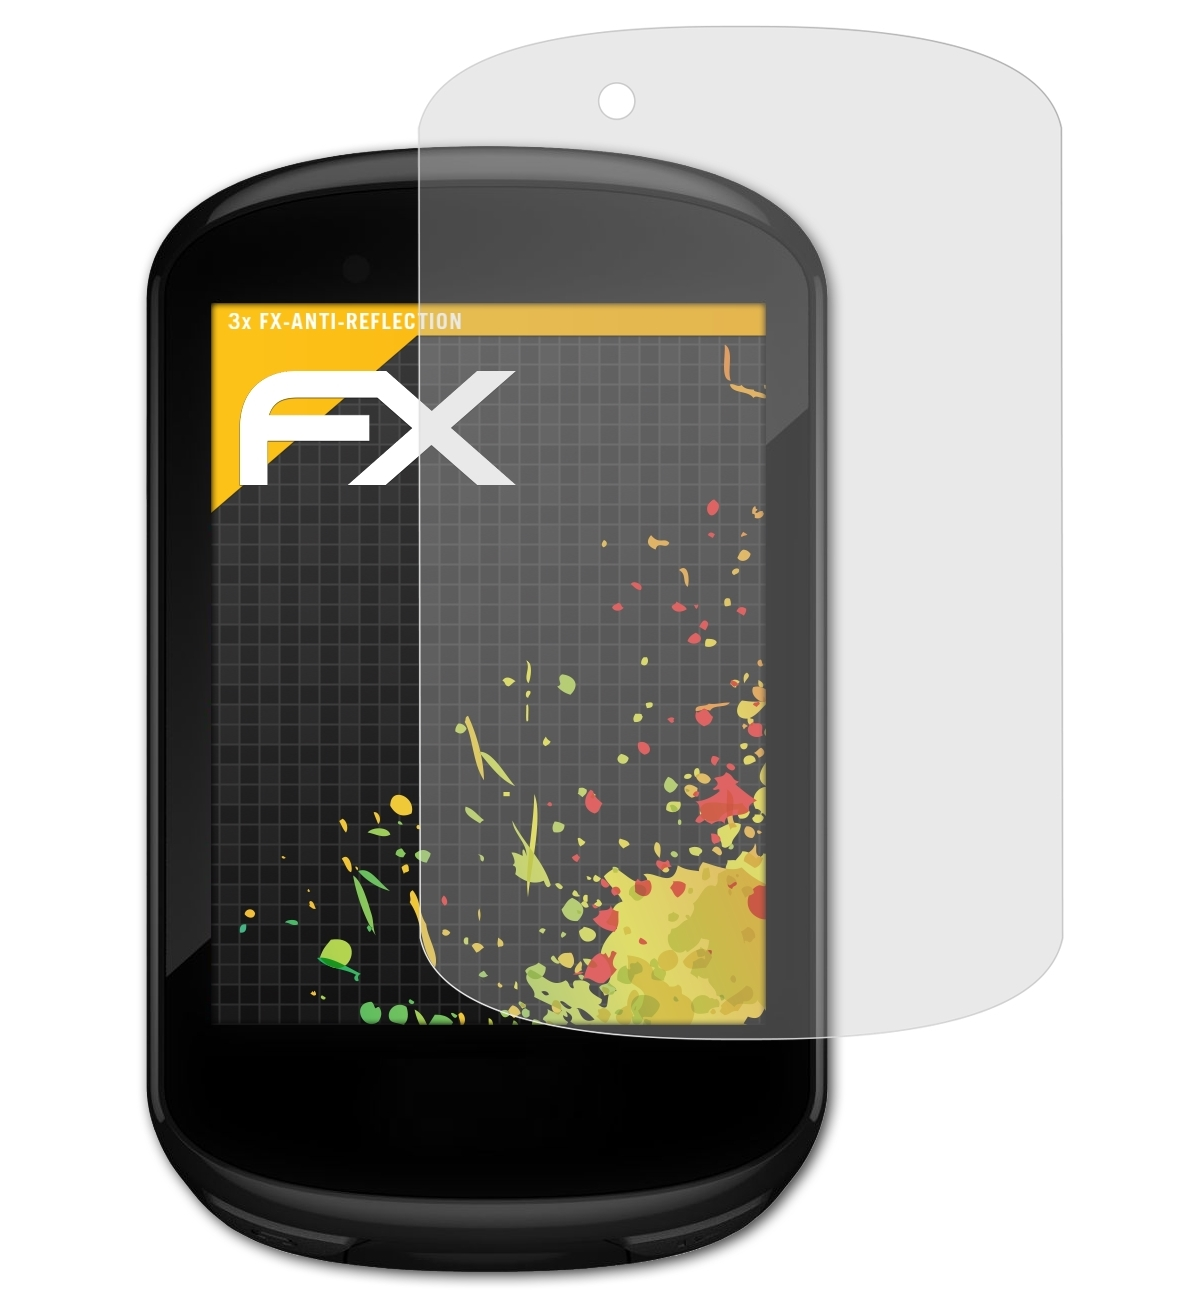 3x Garmin 830) Edge ATFOLIX Displayschutz(für FX-Antireflex